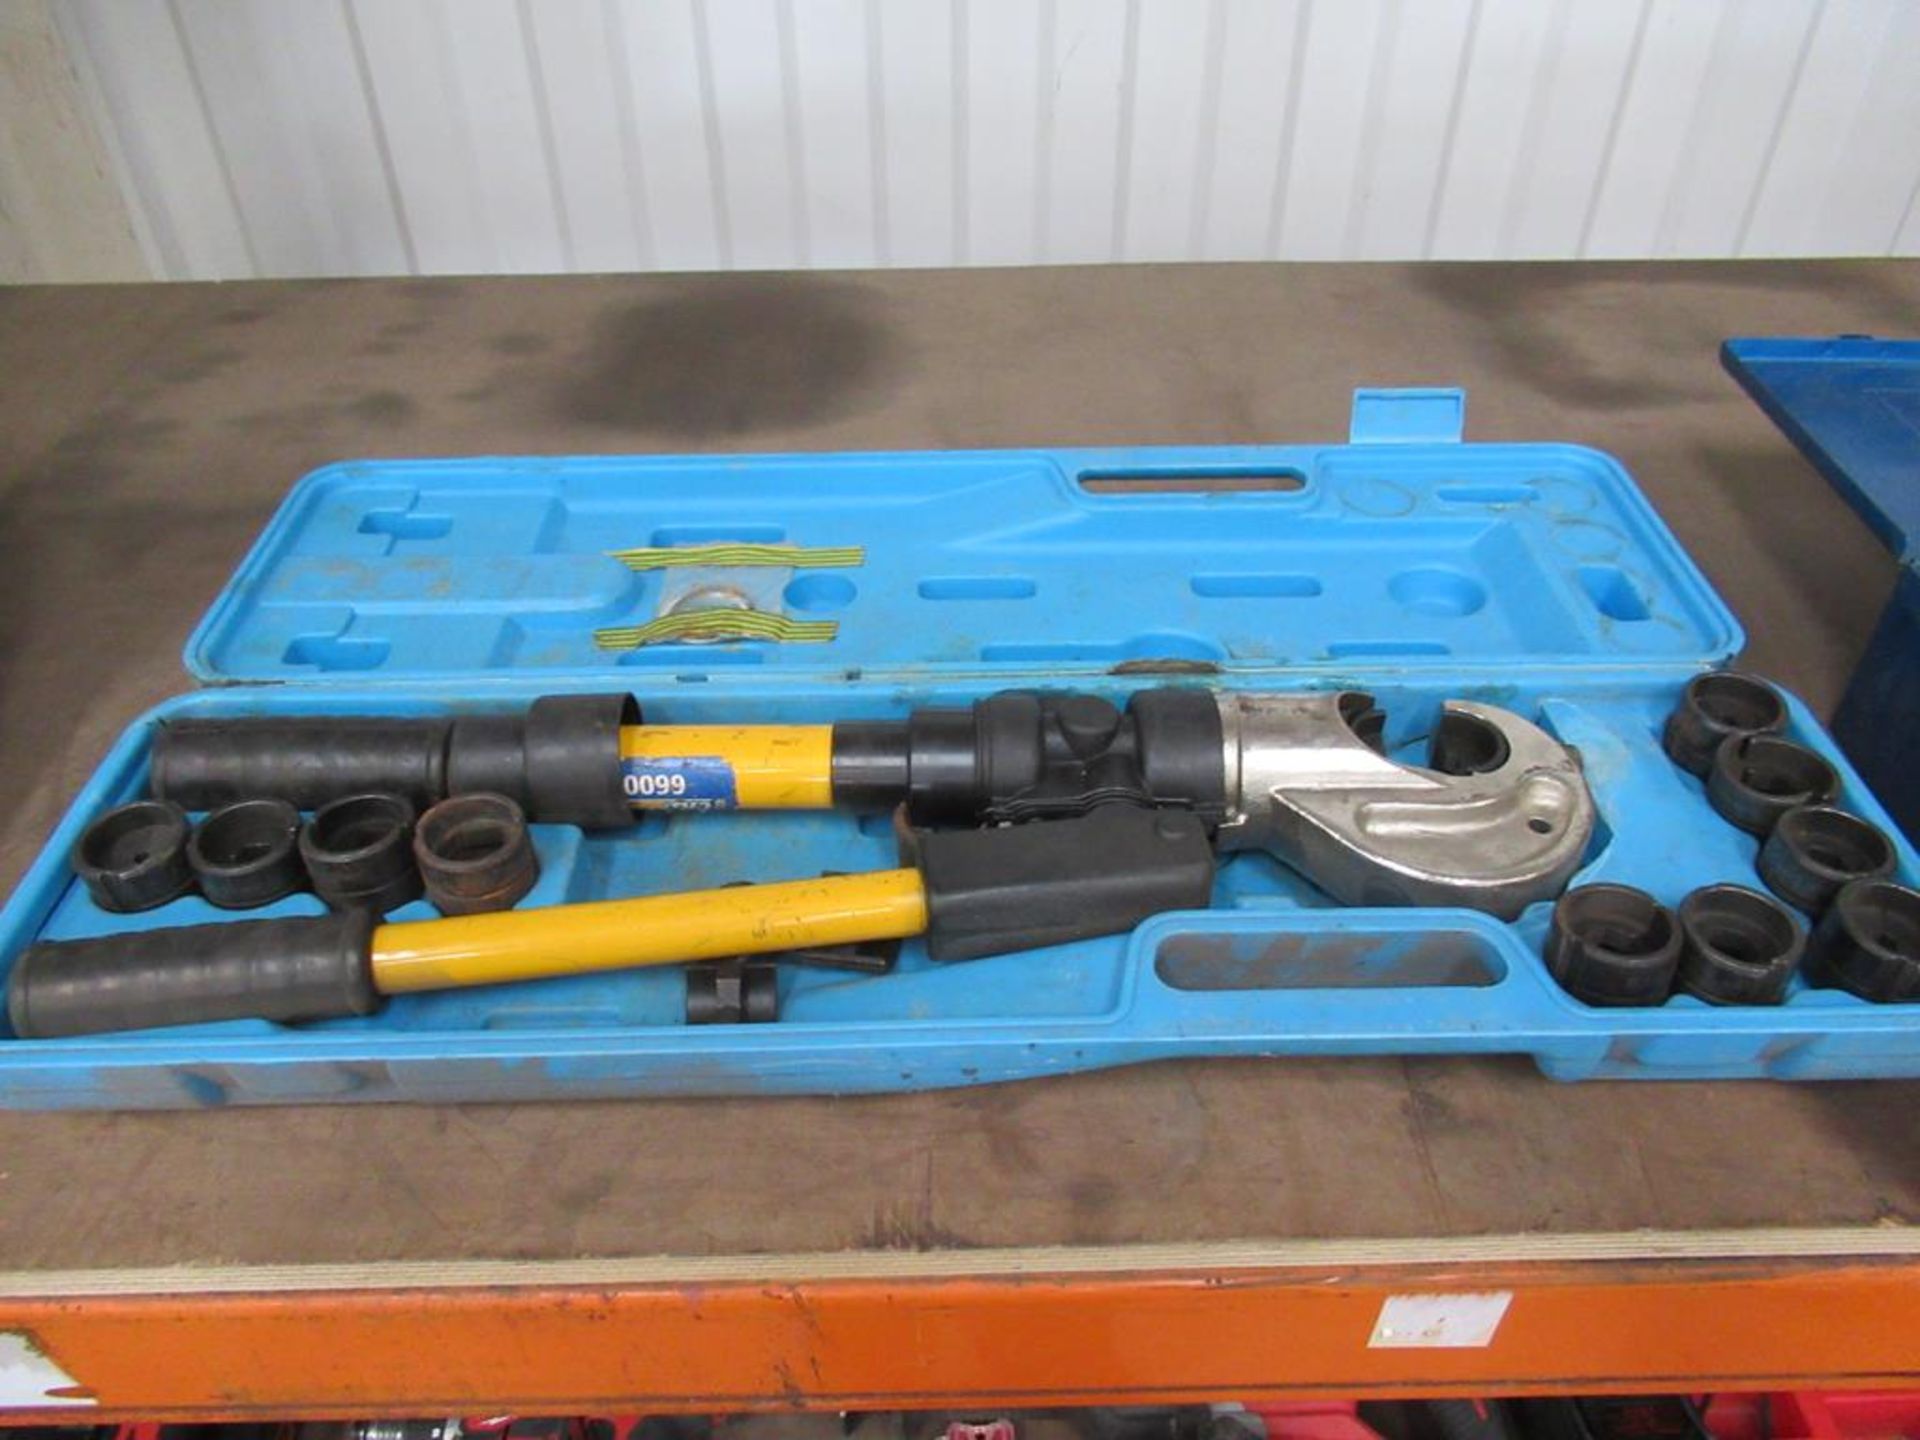 Crimp-Pak 660019 hydraulic crimping tool in case